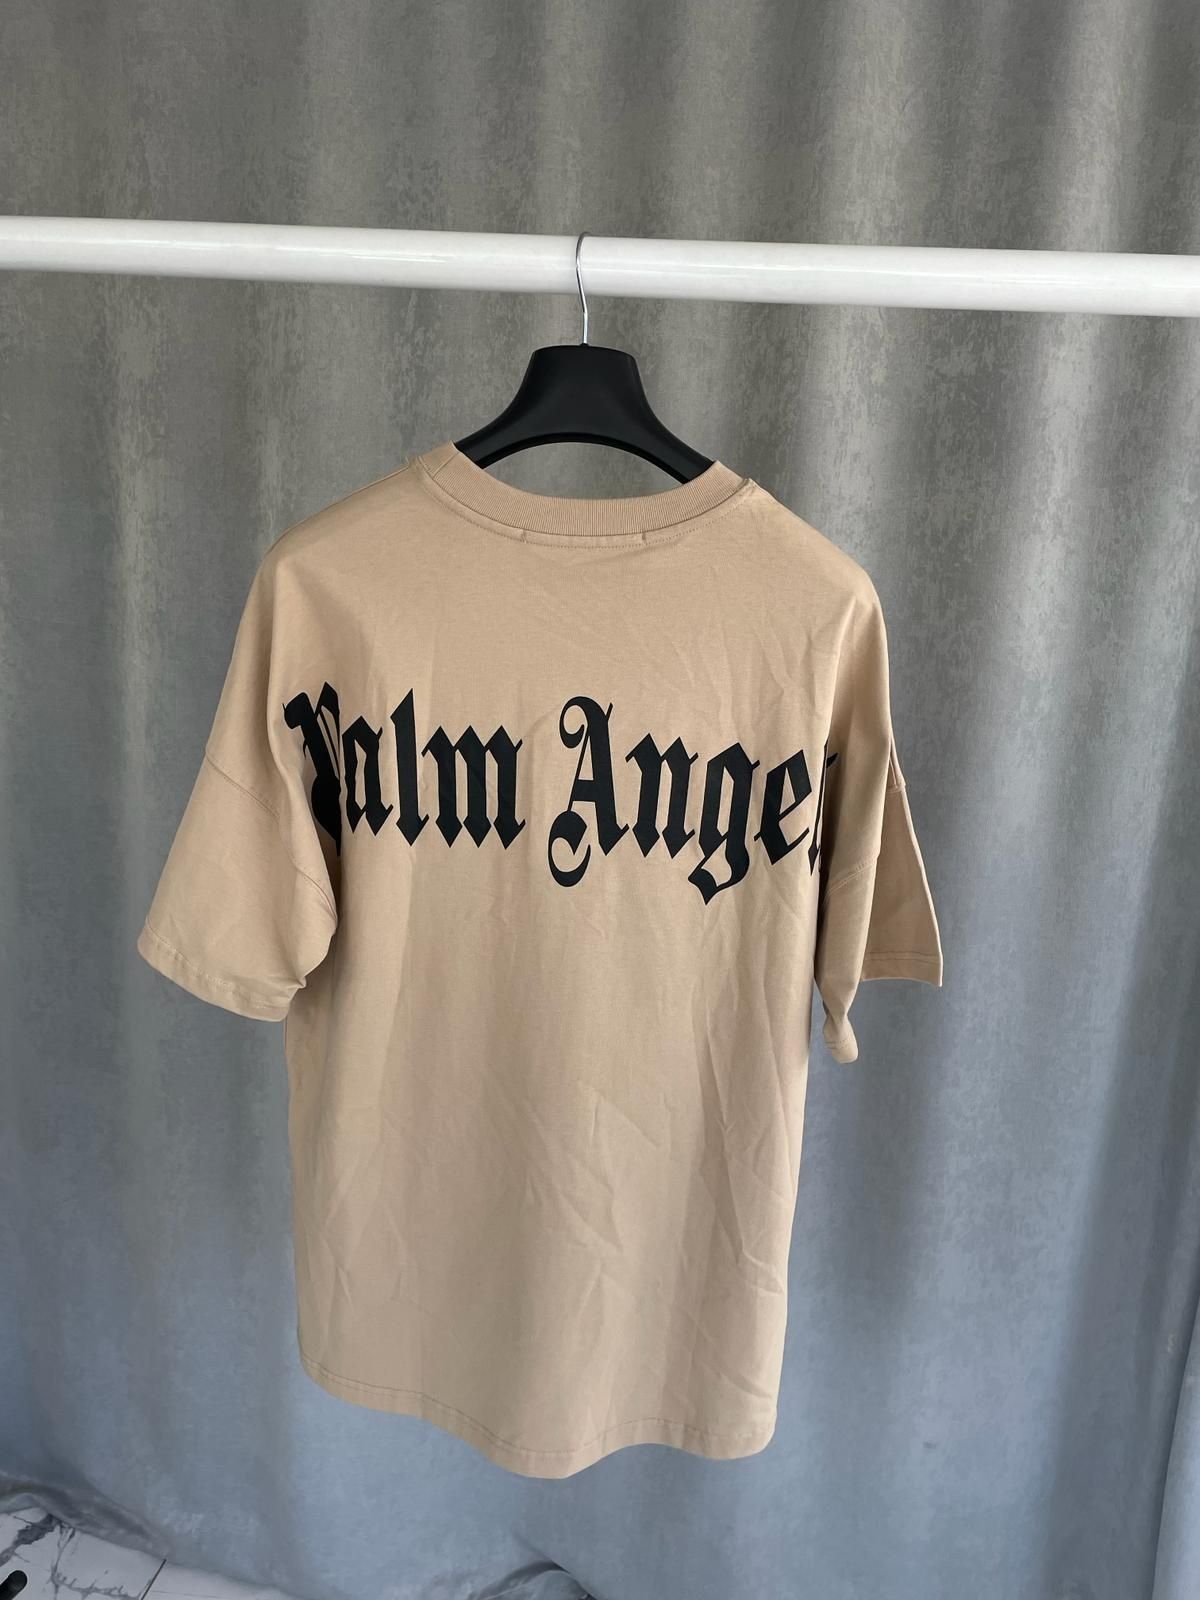 Palm Angels тениска